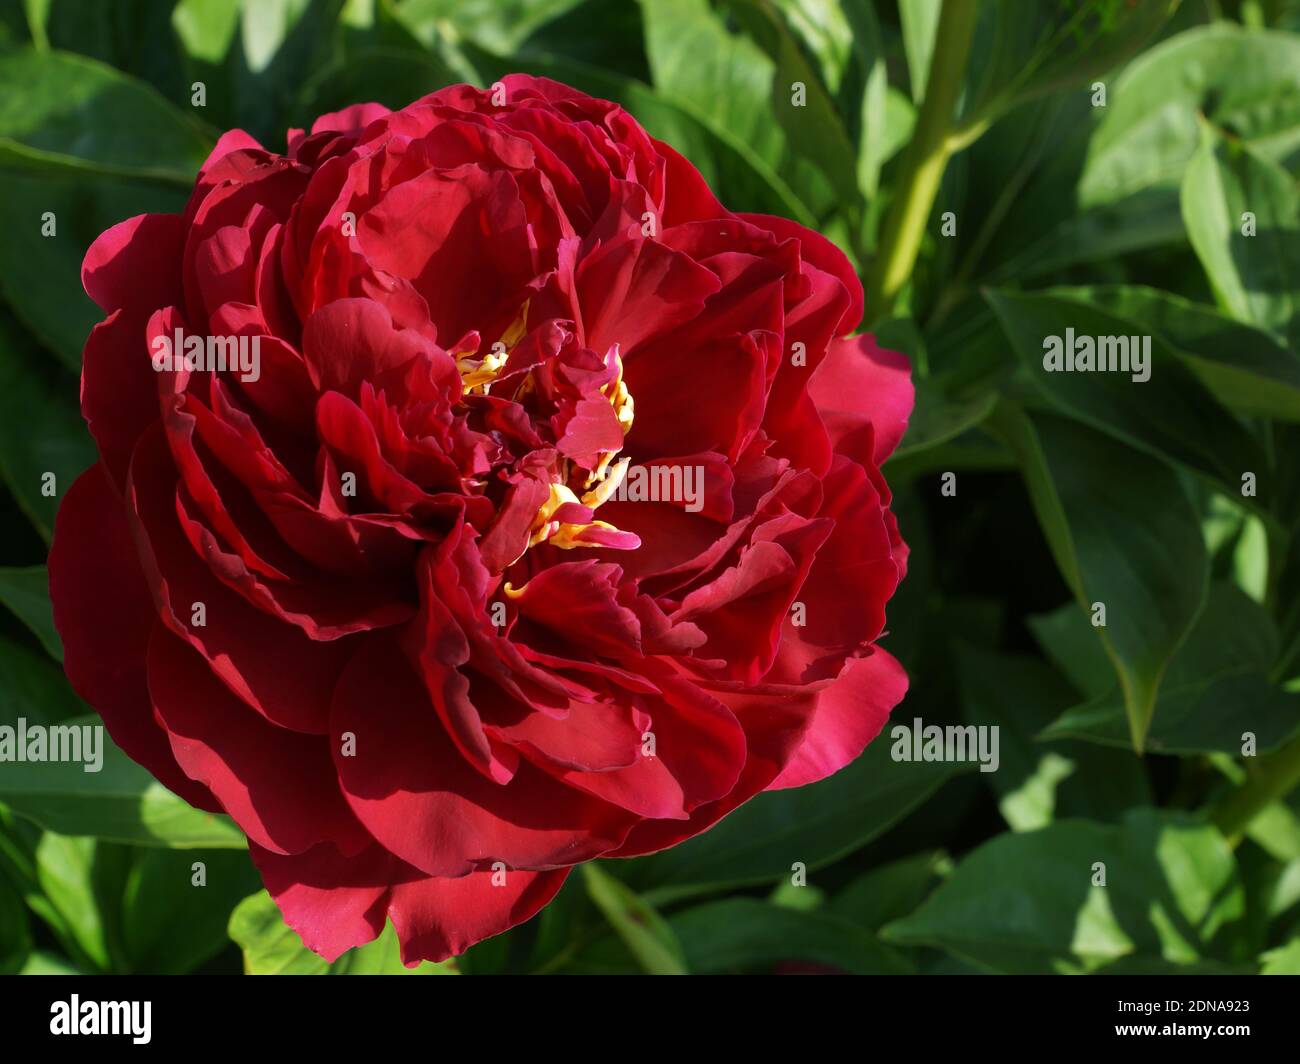 Paeonia fiel antiguo. Doble flor de peonía roja. Paeonia lactiflora (peonía China o peonía común de jardín). Foto de stock